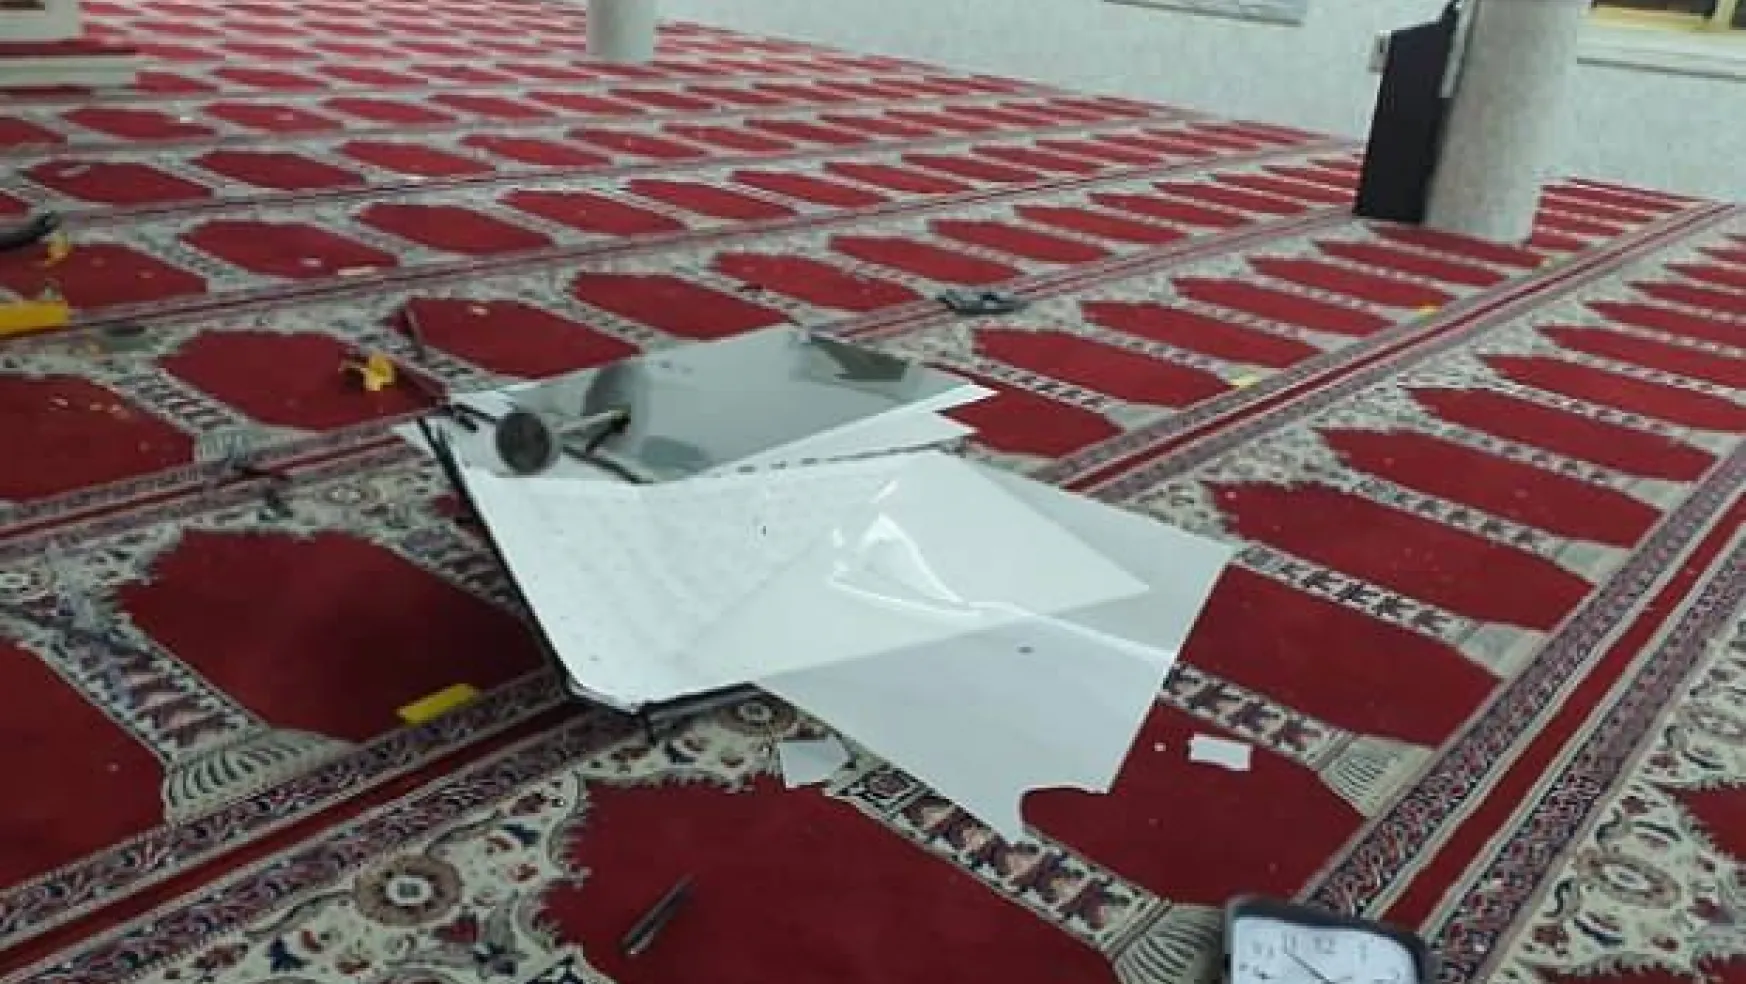 Sydney'de Türk Camisine Saldırı